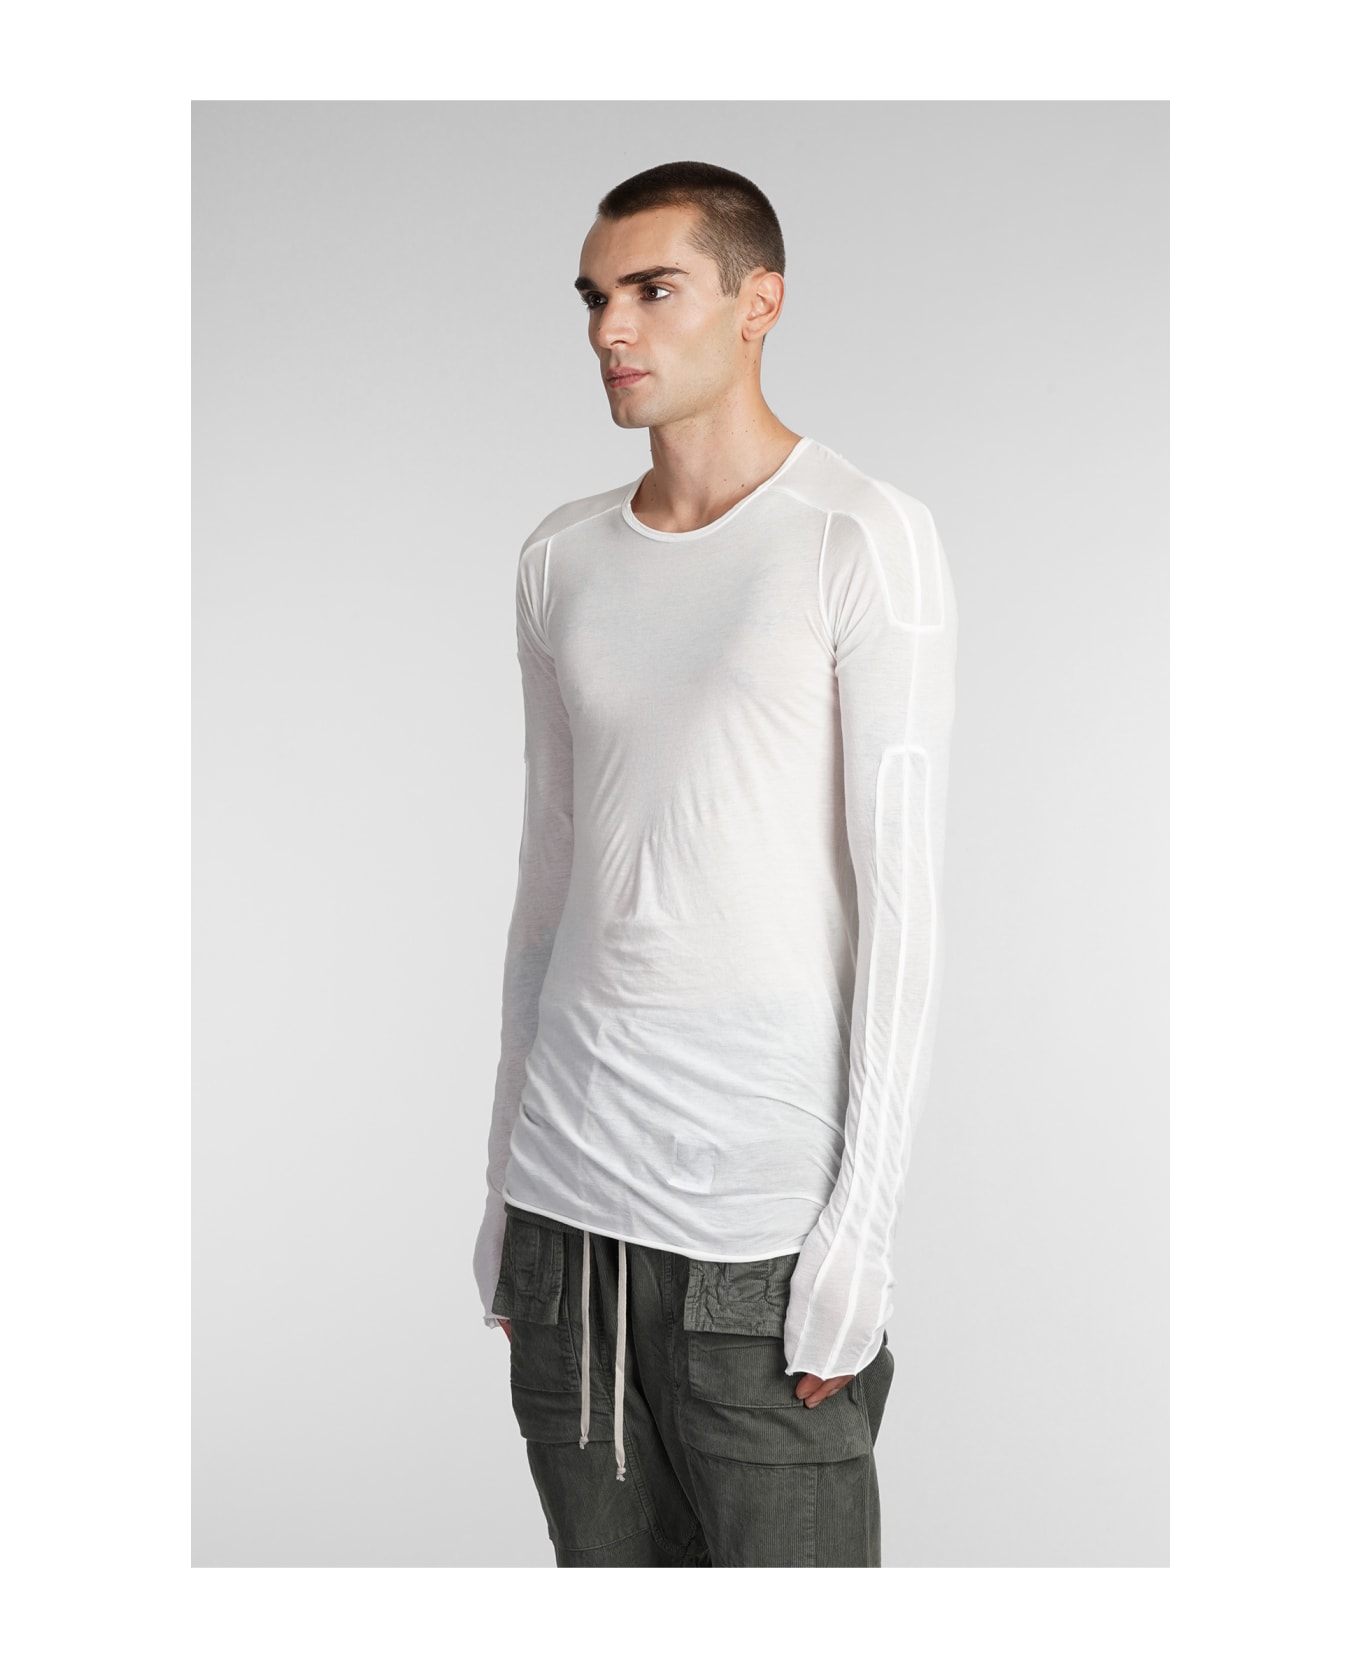 DRKSHDW Long Sleeve T-shirt - White シャツ